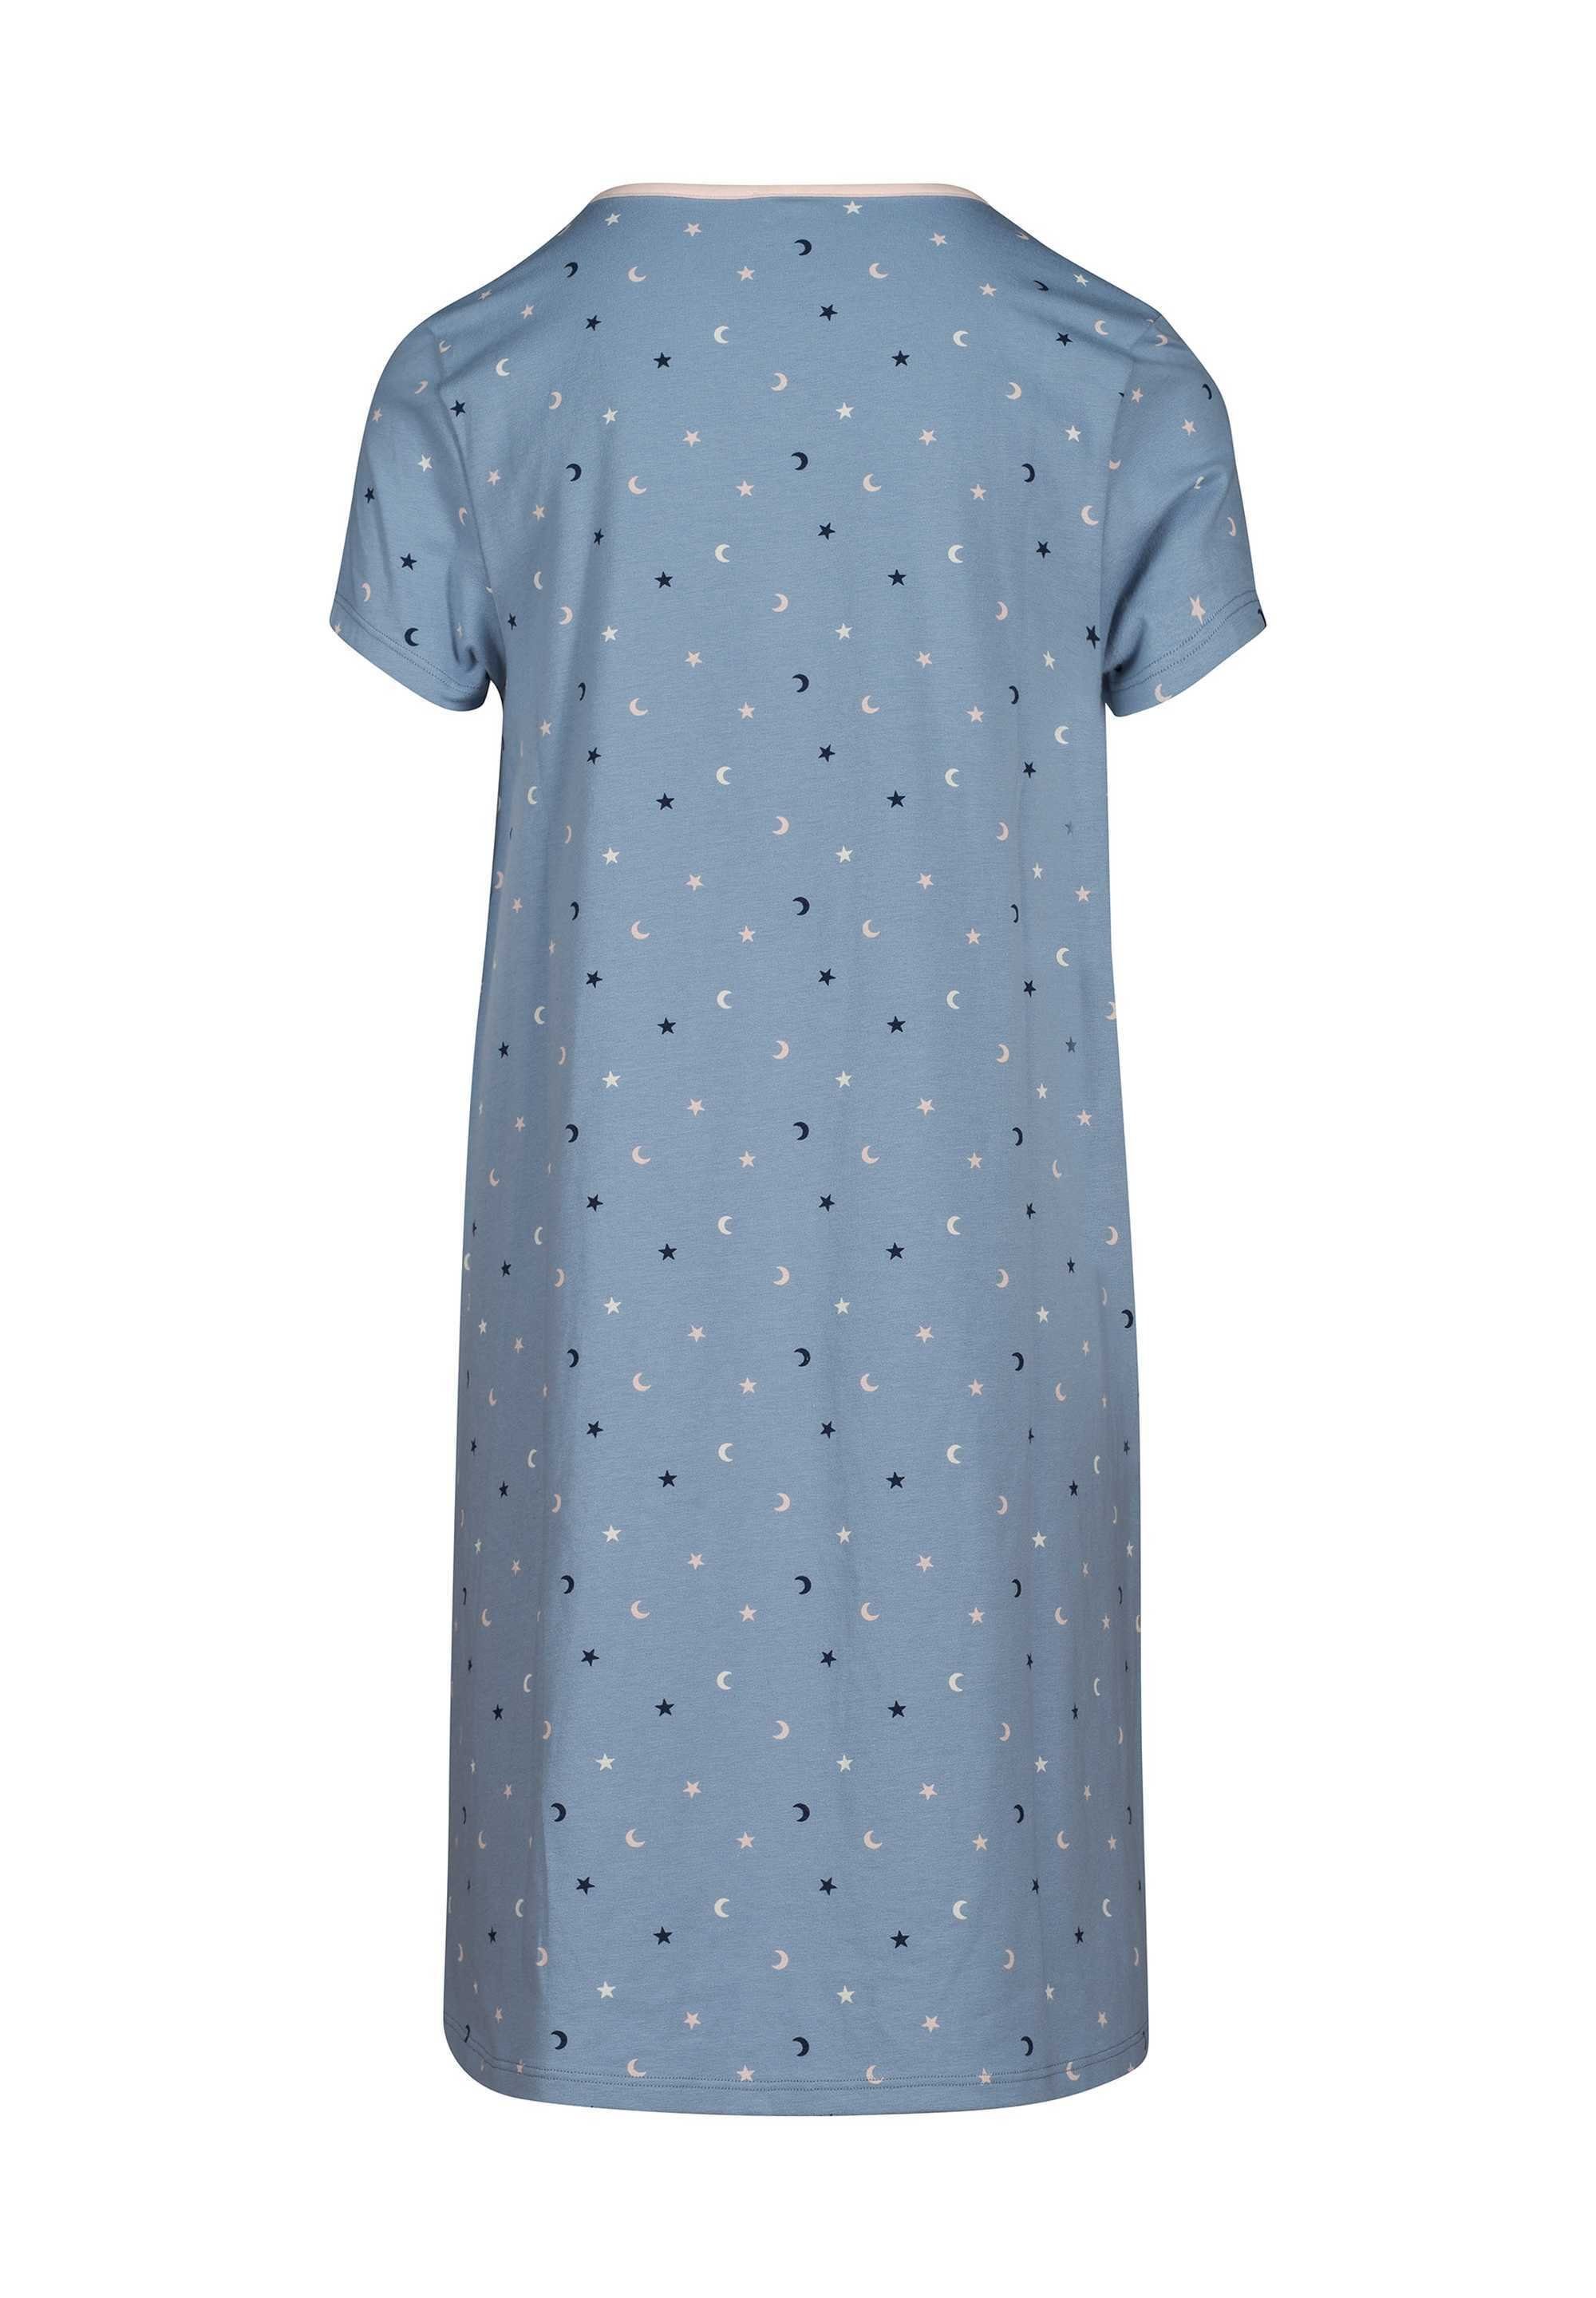 Blau/Sterne Kinder - Sleepshirt, Skiny Kurzarm, Pyjama Nachthemd Mädchen